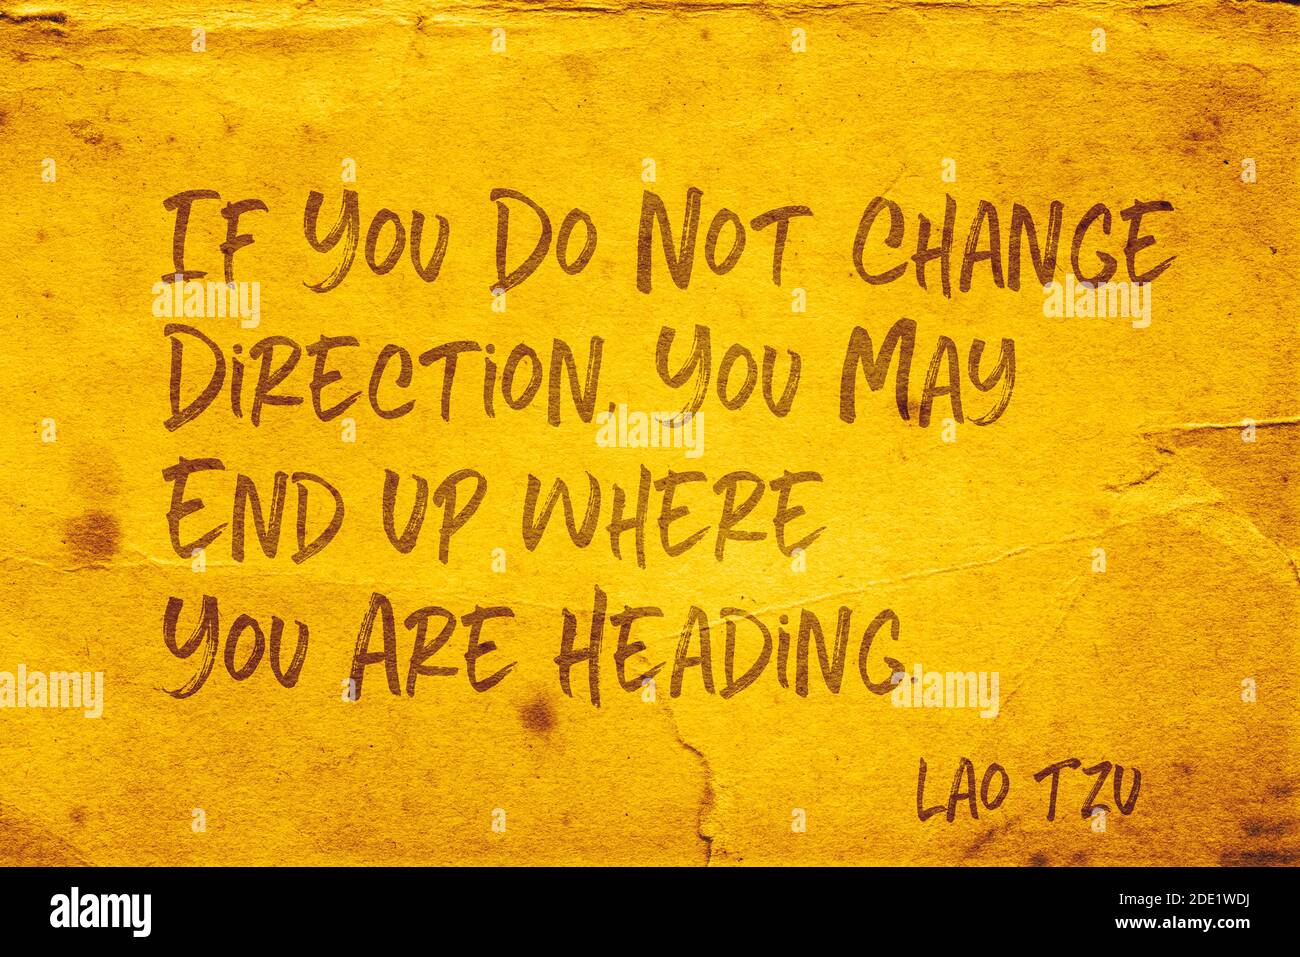 Se non si cambia direzione, si può finire dove si sta dirigendo - antico filosofo cinese Lao Tzu citazione stampata su carta grunge giallo Foto Stock